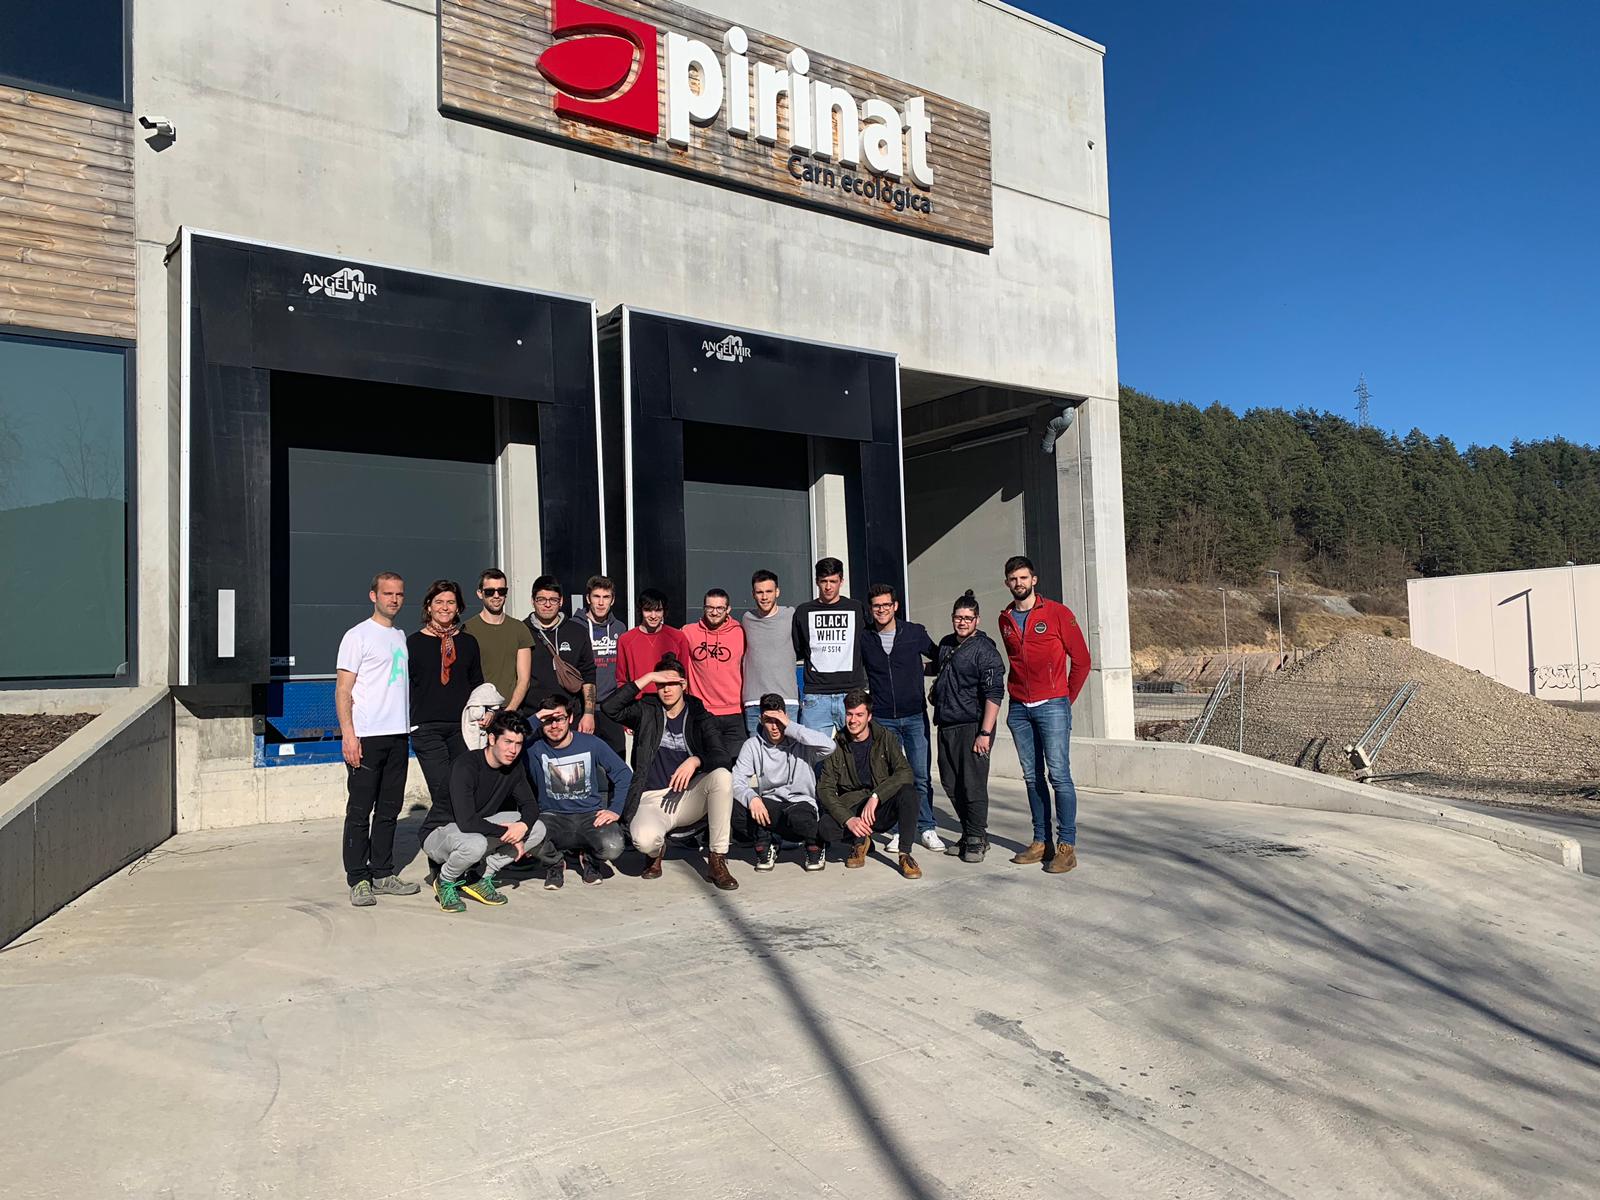 Alumnos de l'Escola del Treball del Ripollès visitan Pirinat para conocer su proyecto emprendedor